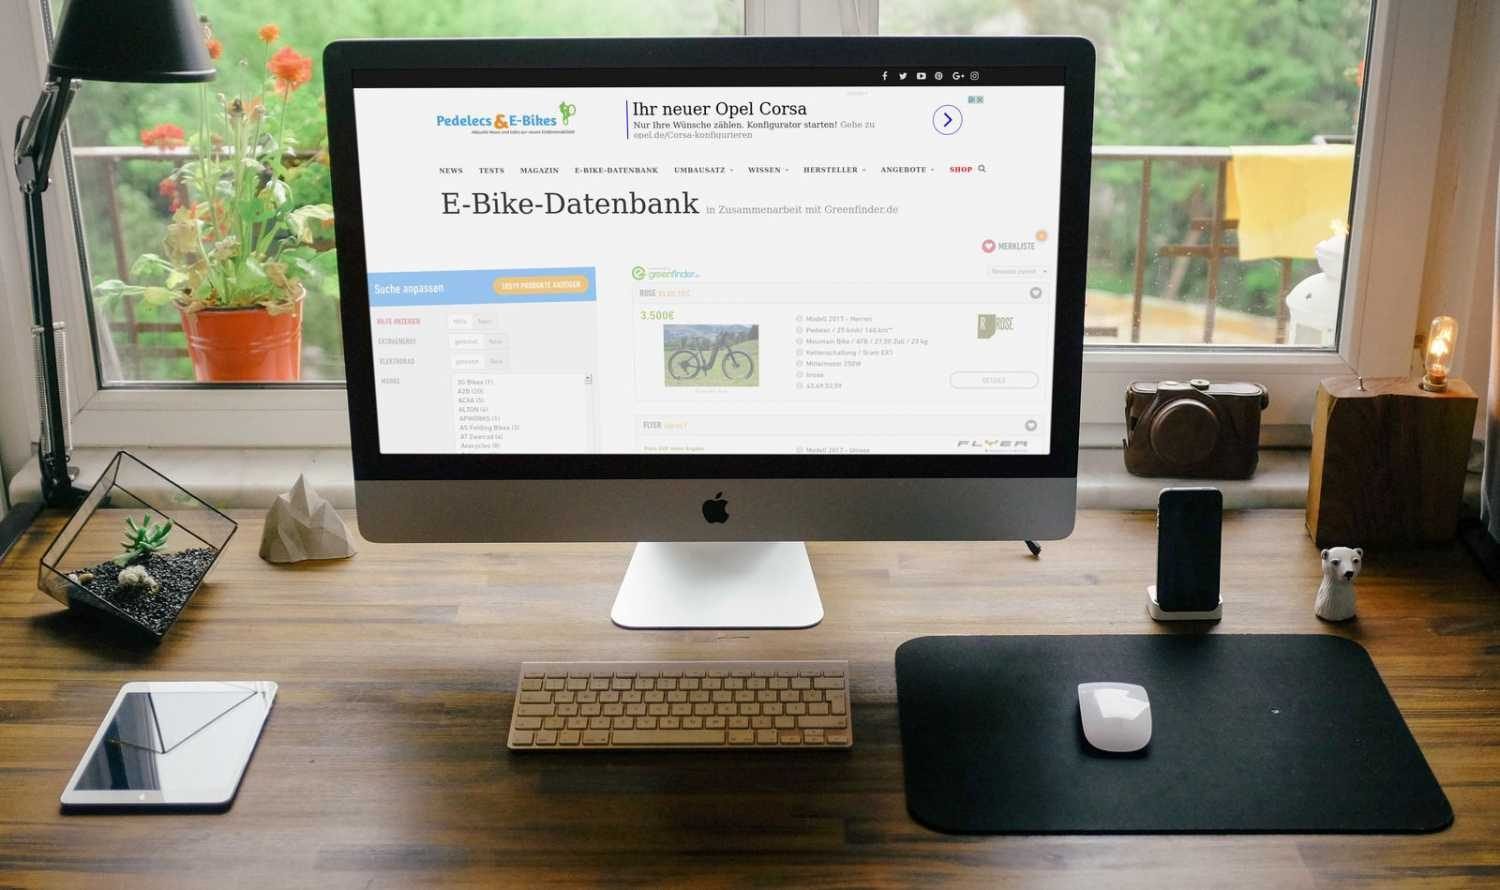 E-Bike-Datenbank